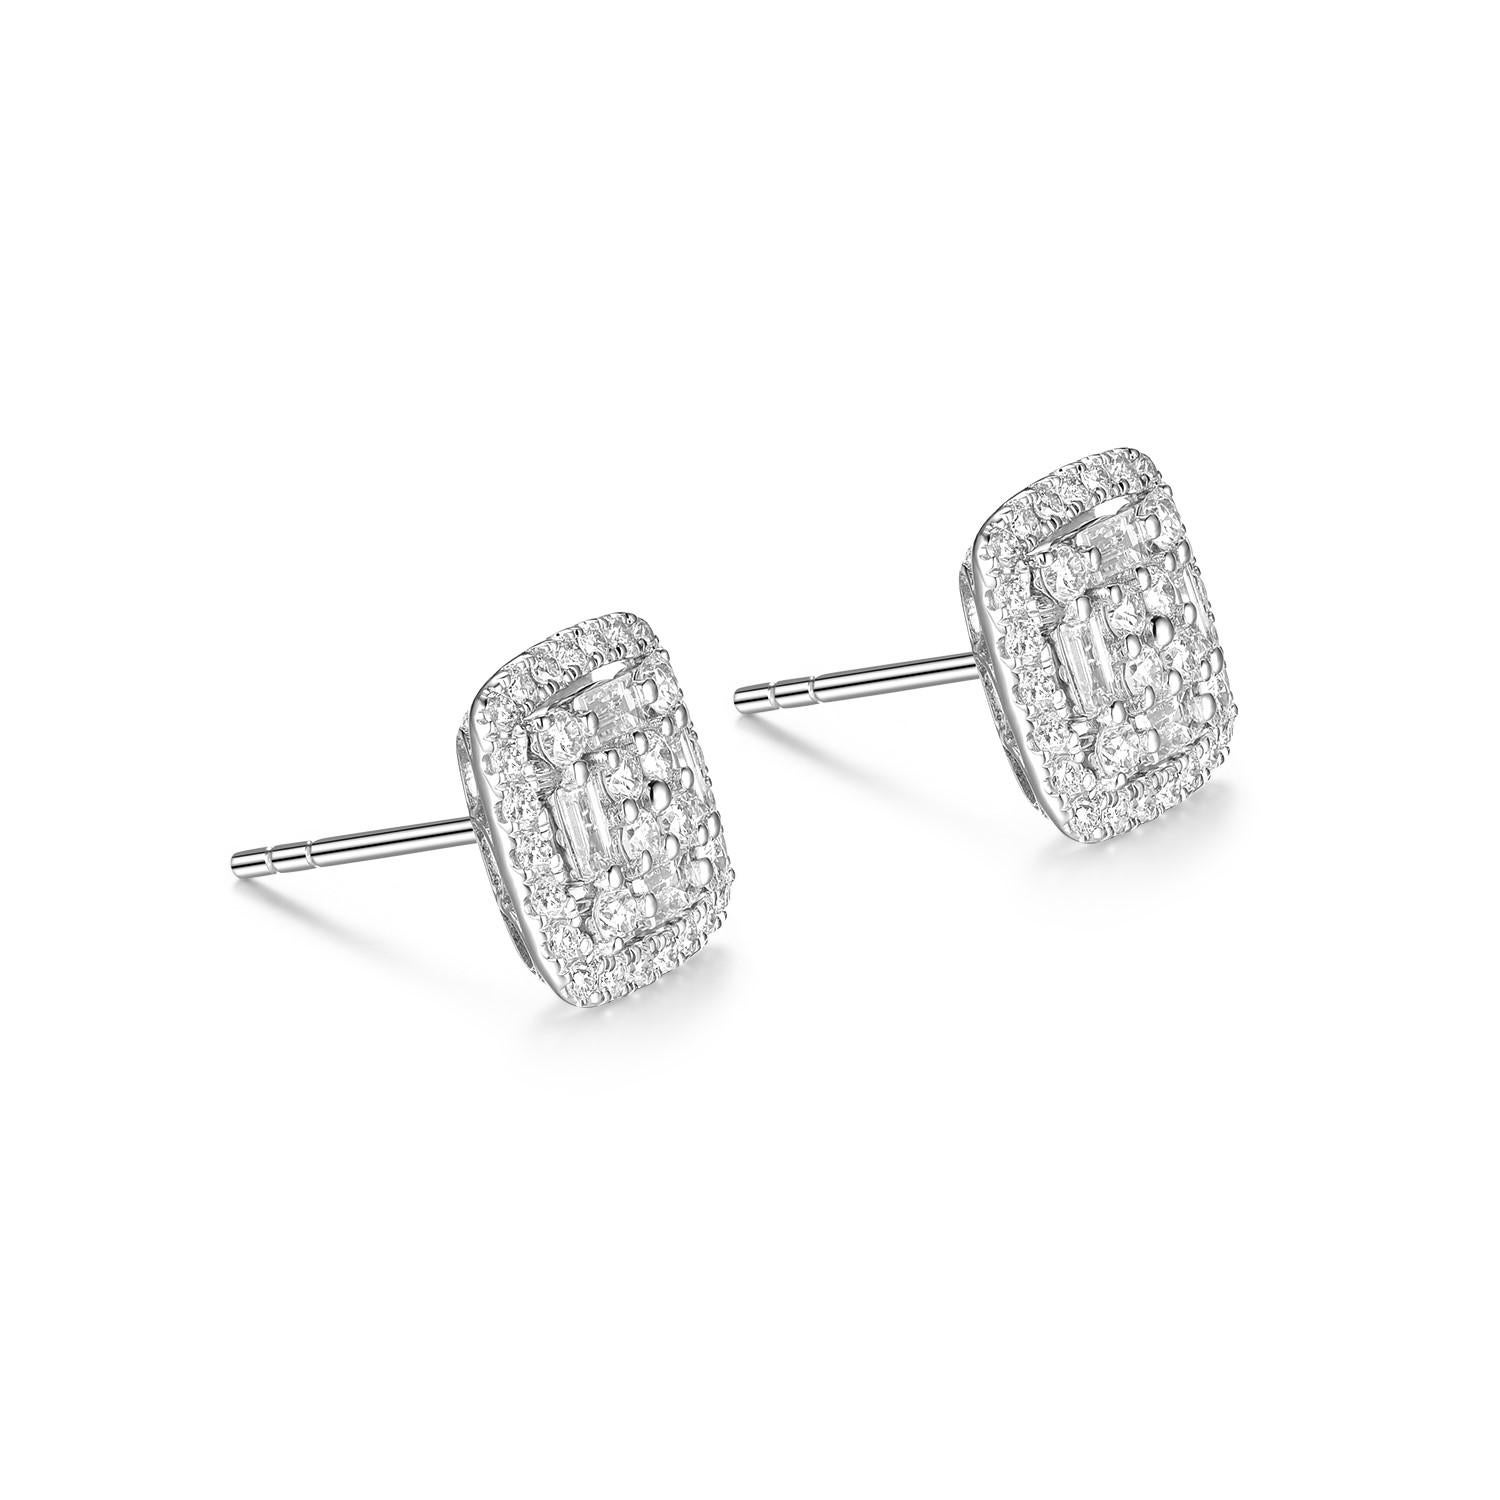 Ces boucles d'oreilles en diamant présentent un diamant baguette effilé de 0,31 carat, assorti de diamants ronds de 0,63 carat. Les boucles d'oreilles sont serties en or blanc 18 carats.
Les diamants sont de couleur F et de qualité VS

Diamant